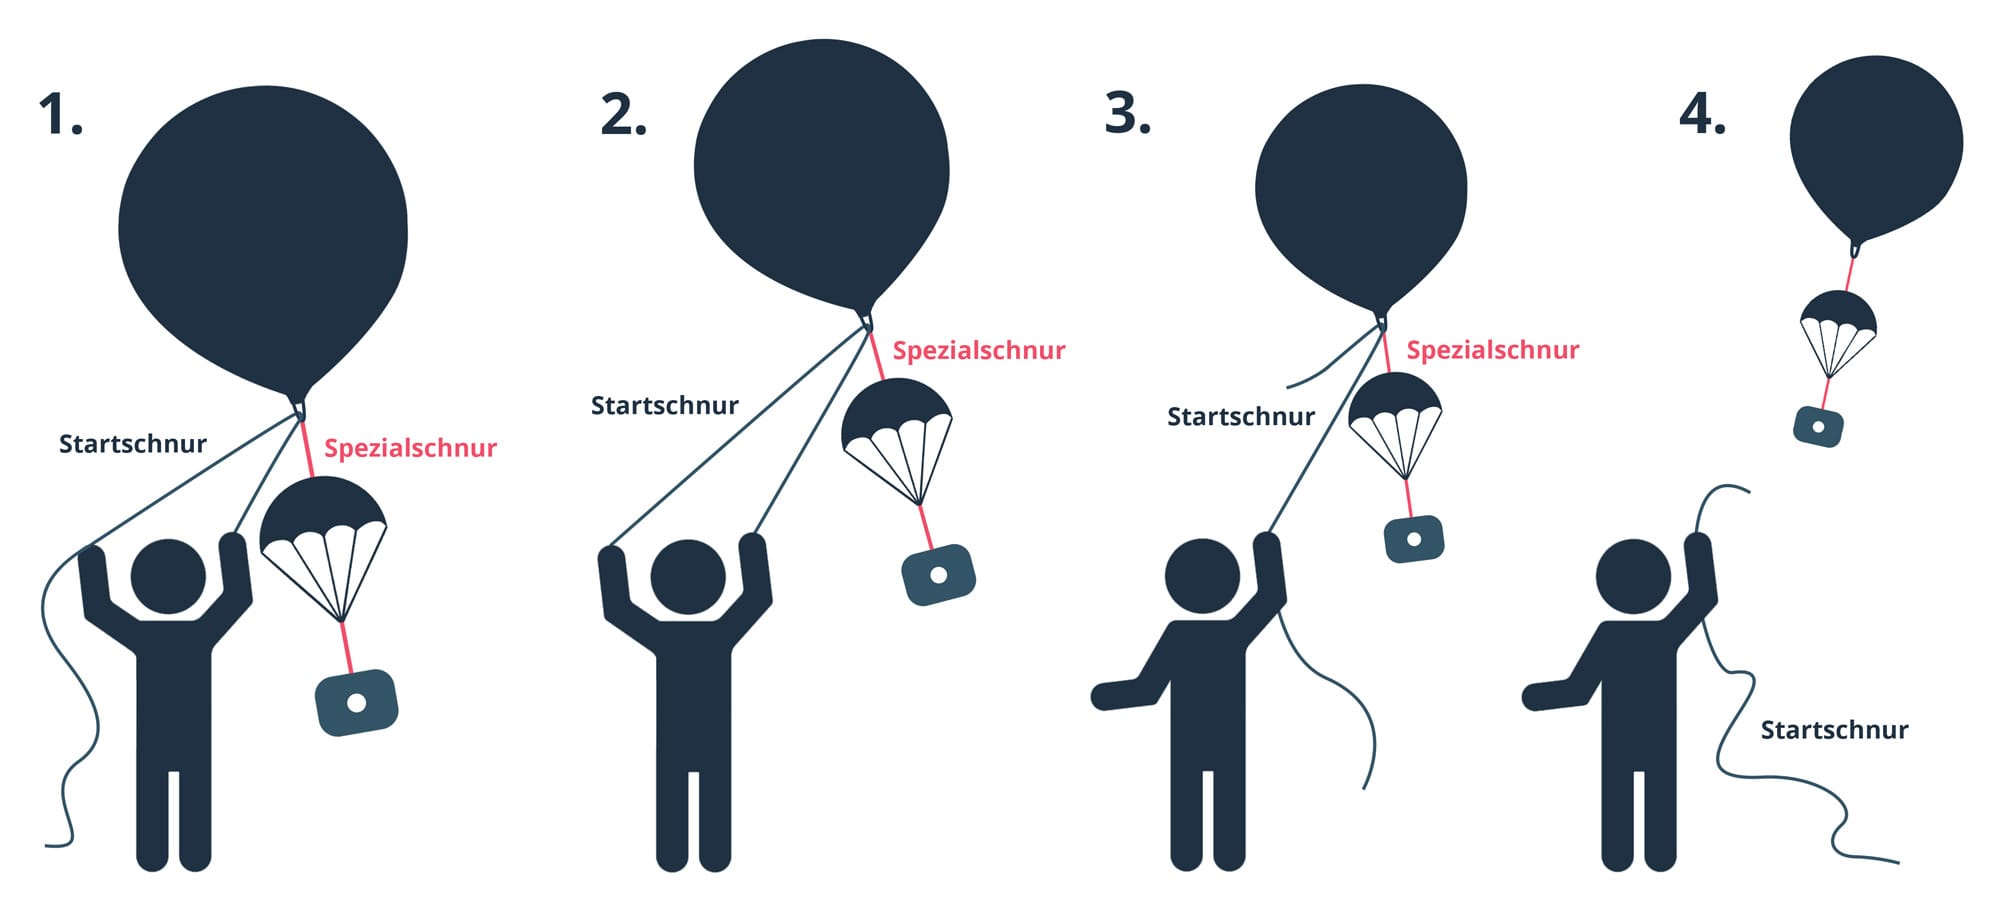 Wetterballon auflassen mit Startschnur